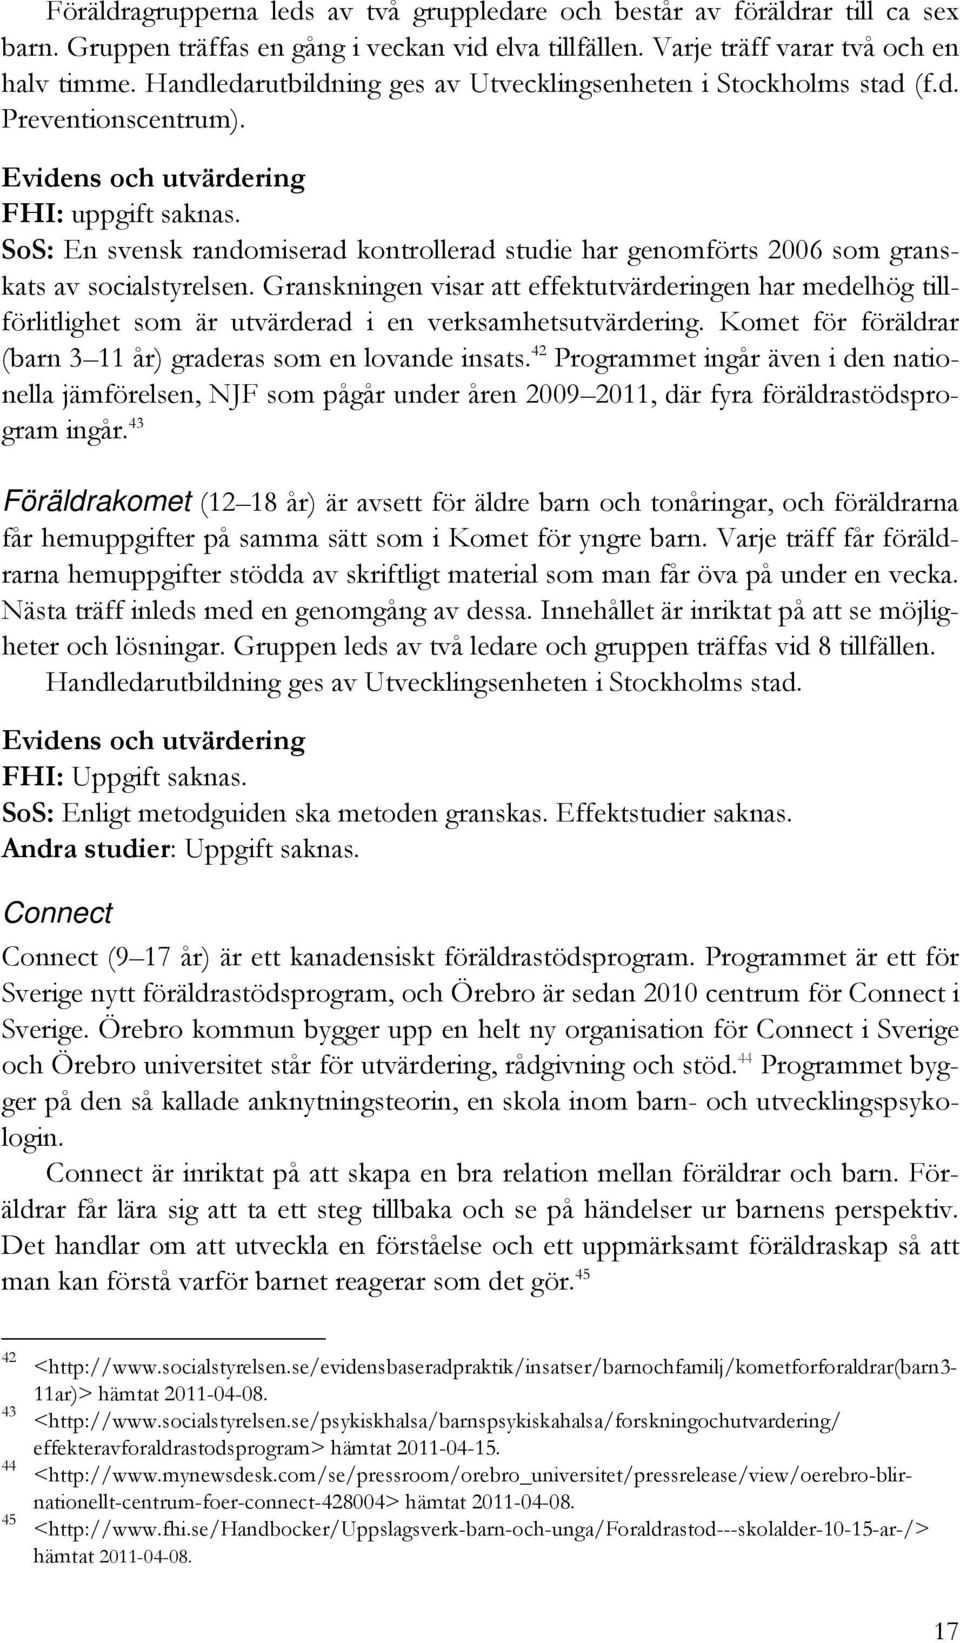 SoS: En svensk randomiserad kontrollerad studie har genomförts 2006 som granskats av socialstyrelsen.